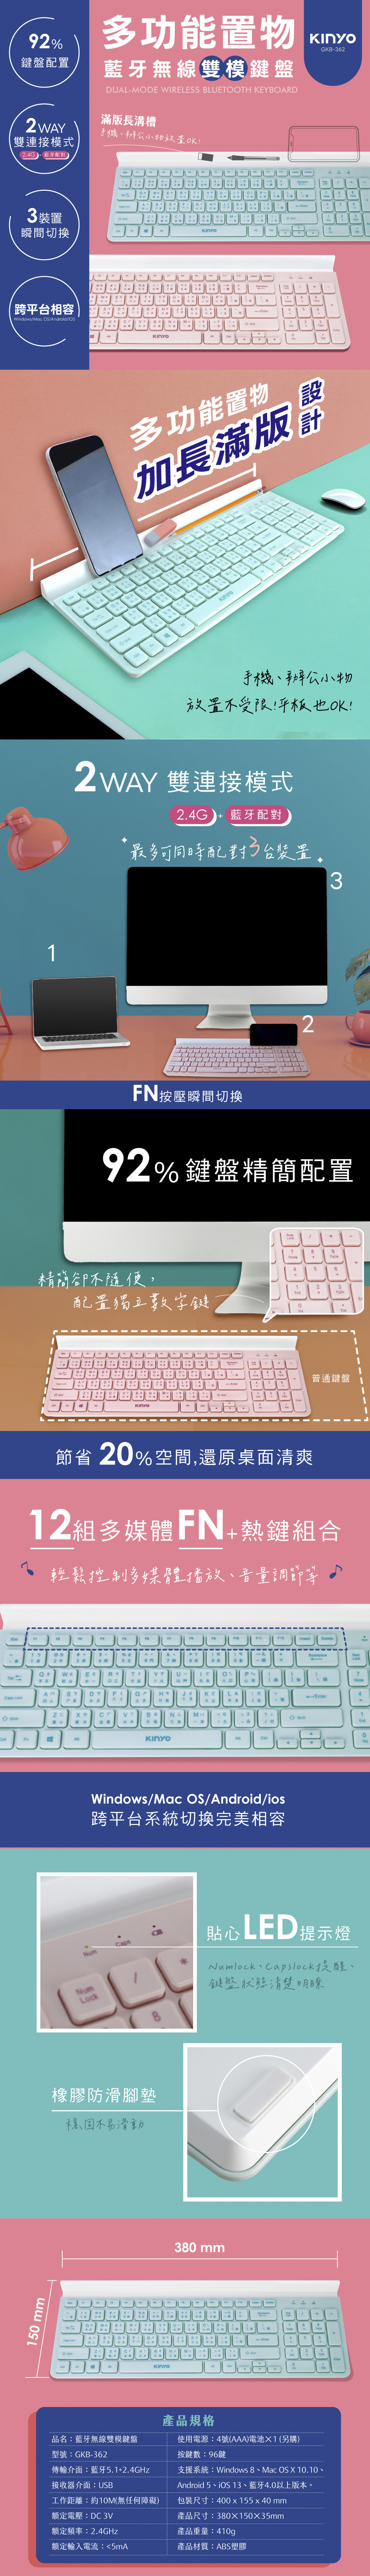 多功能 綠色 粉紅色 鍵盤 Windows 鍵盤